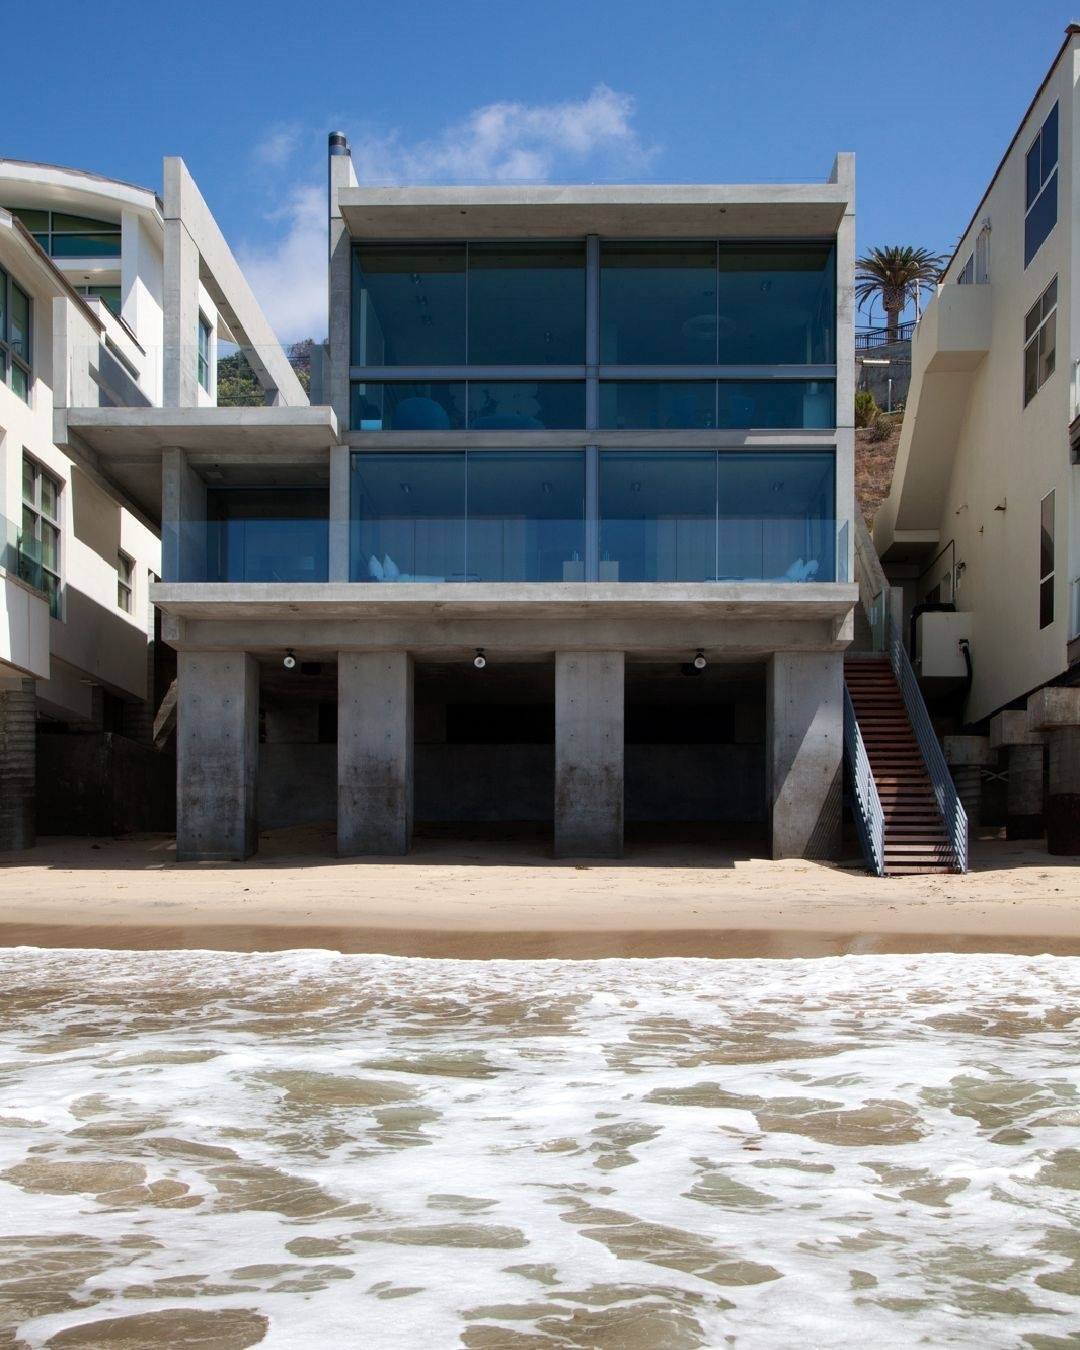 Casa Kanye West diseñada por Tadao Ando en Malibú fachada desde el mar